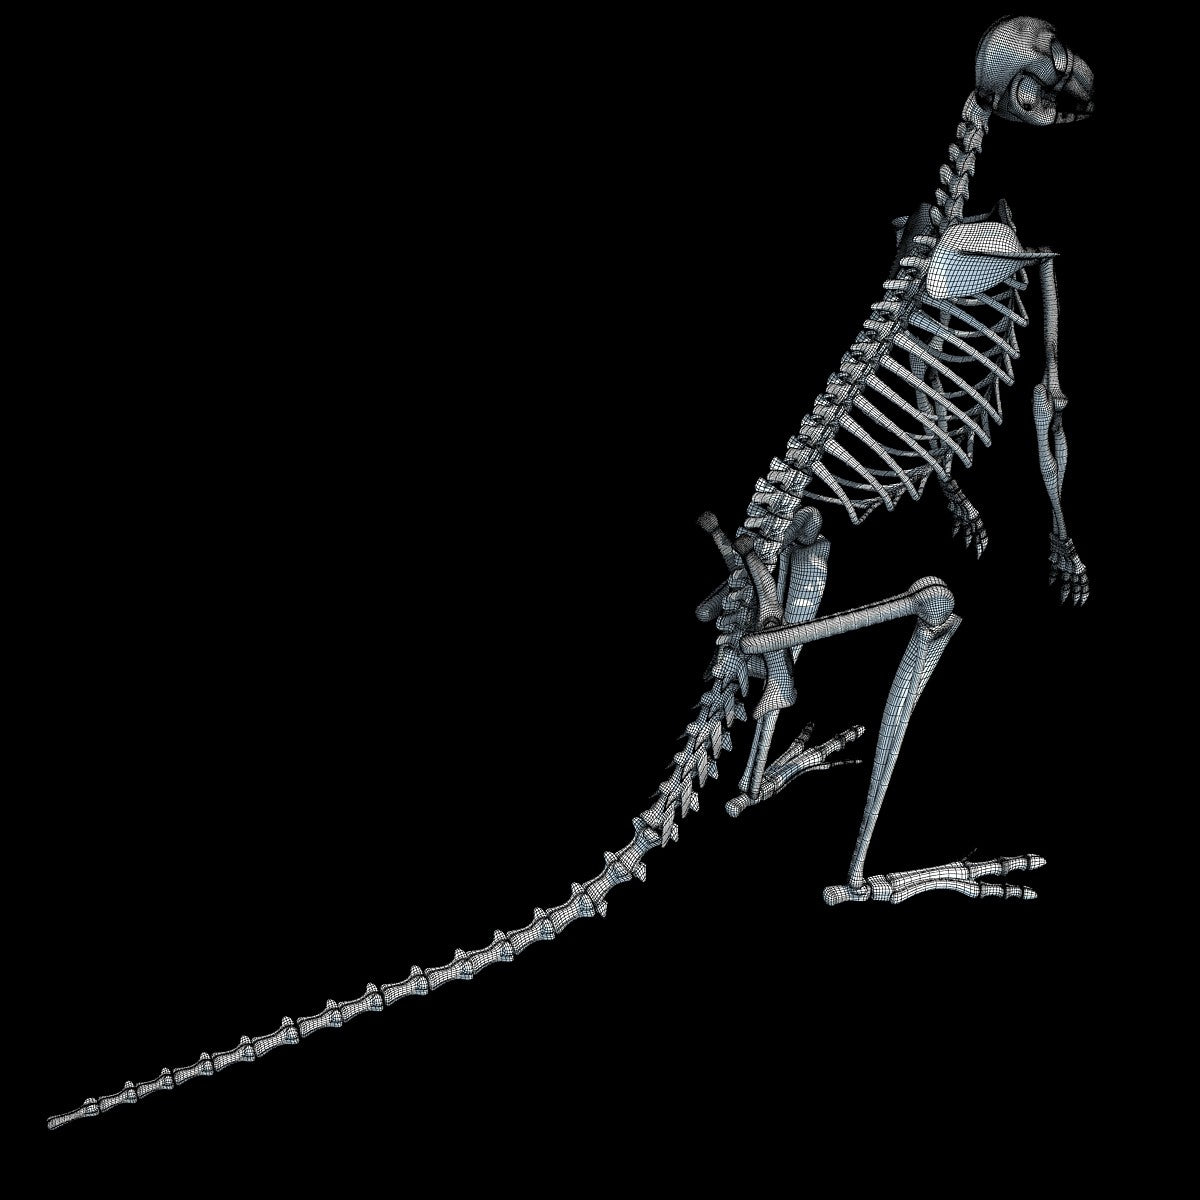 Kangaroo Skeleton